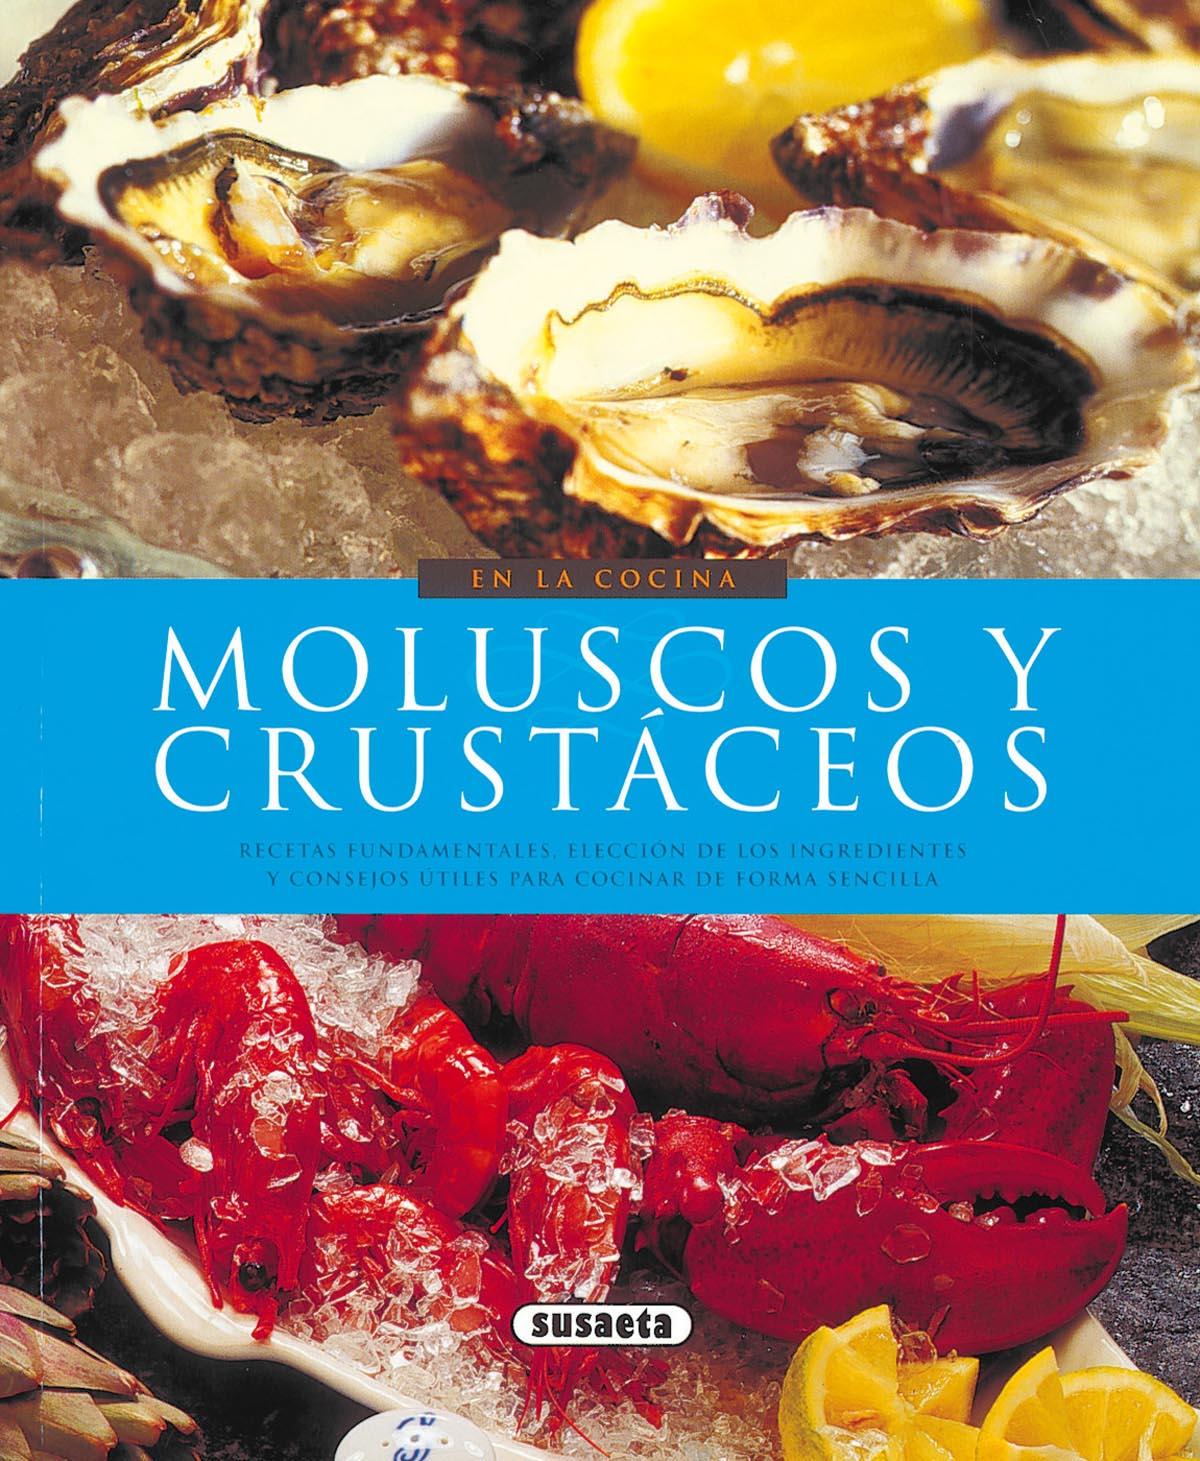 Moluscos y crustáceos